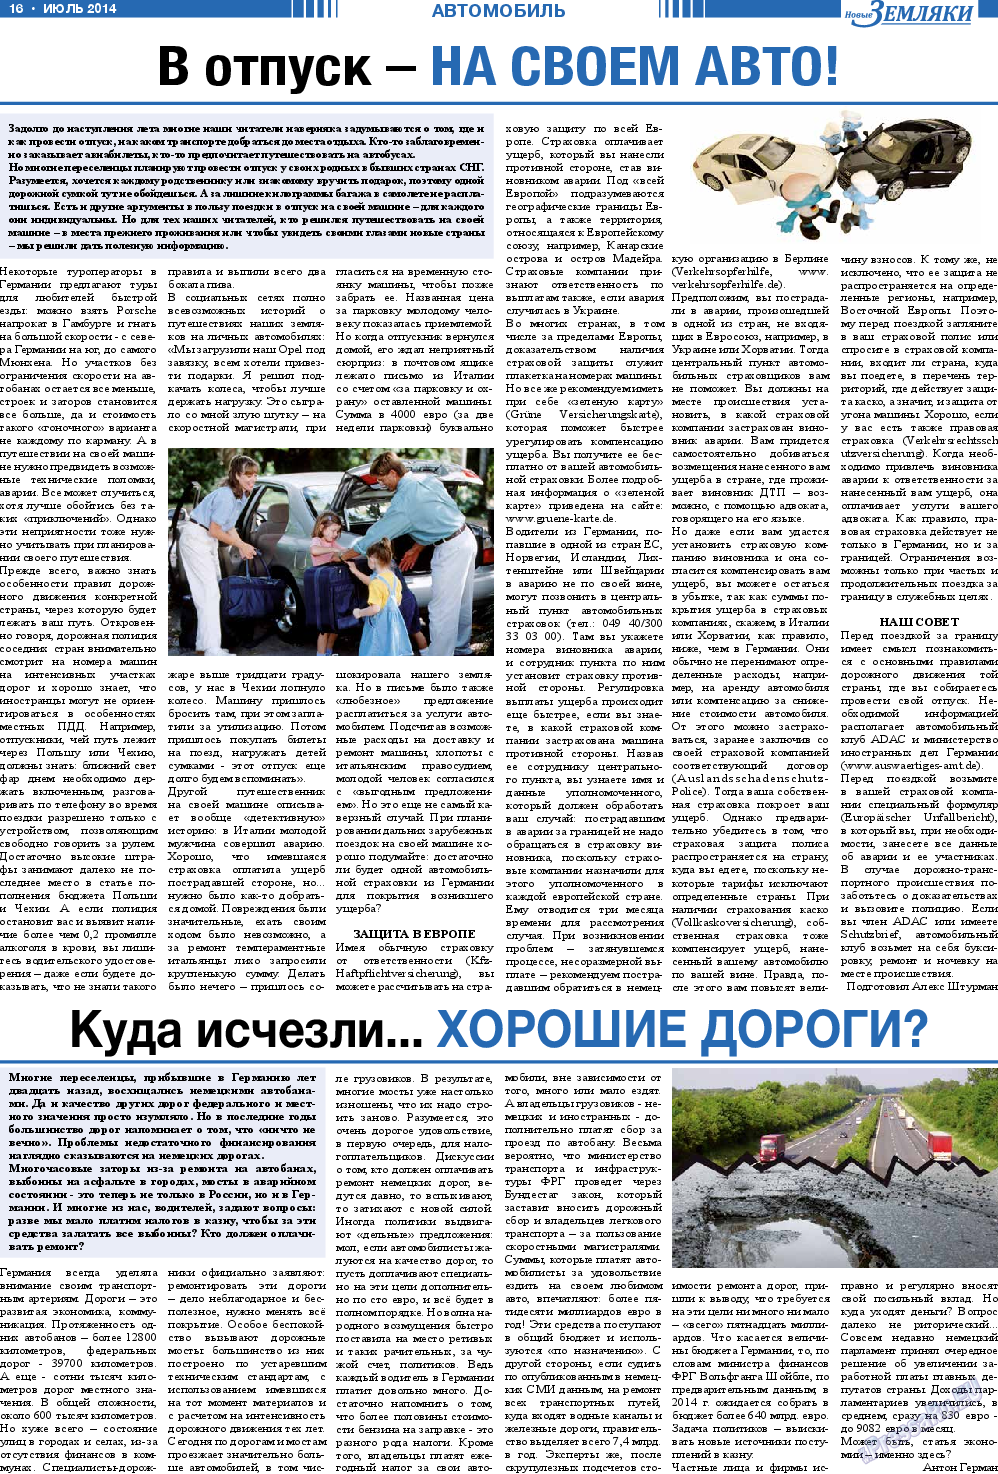 Новые Земляки (газета). 2014 год, номер 7, стр. 16